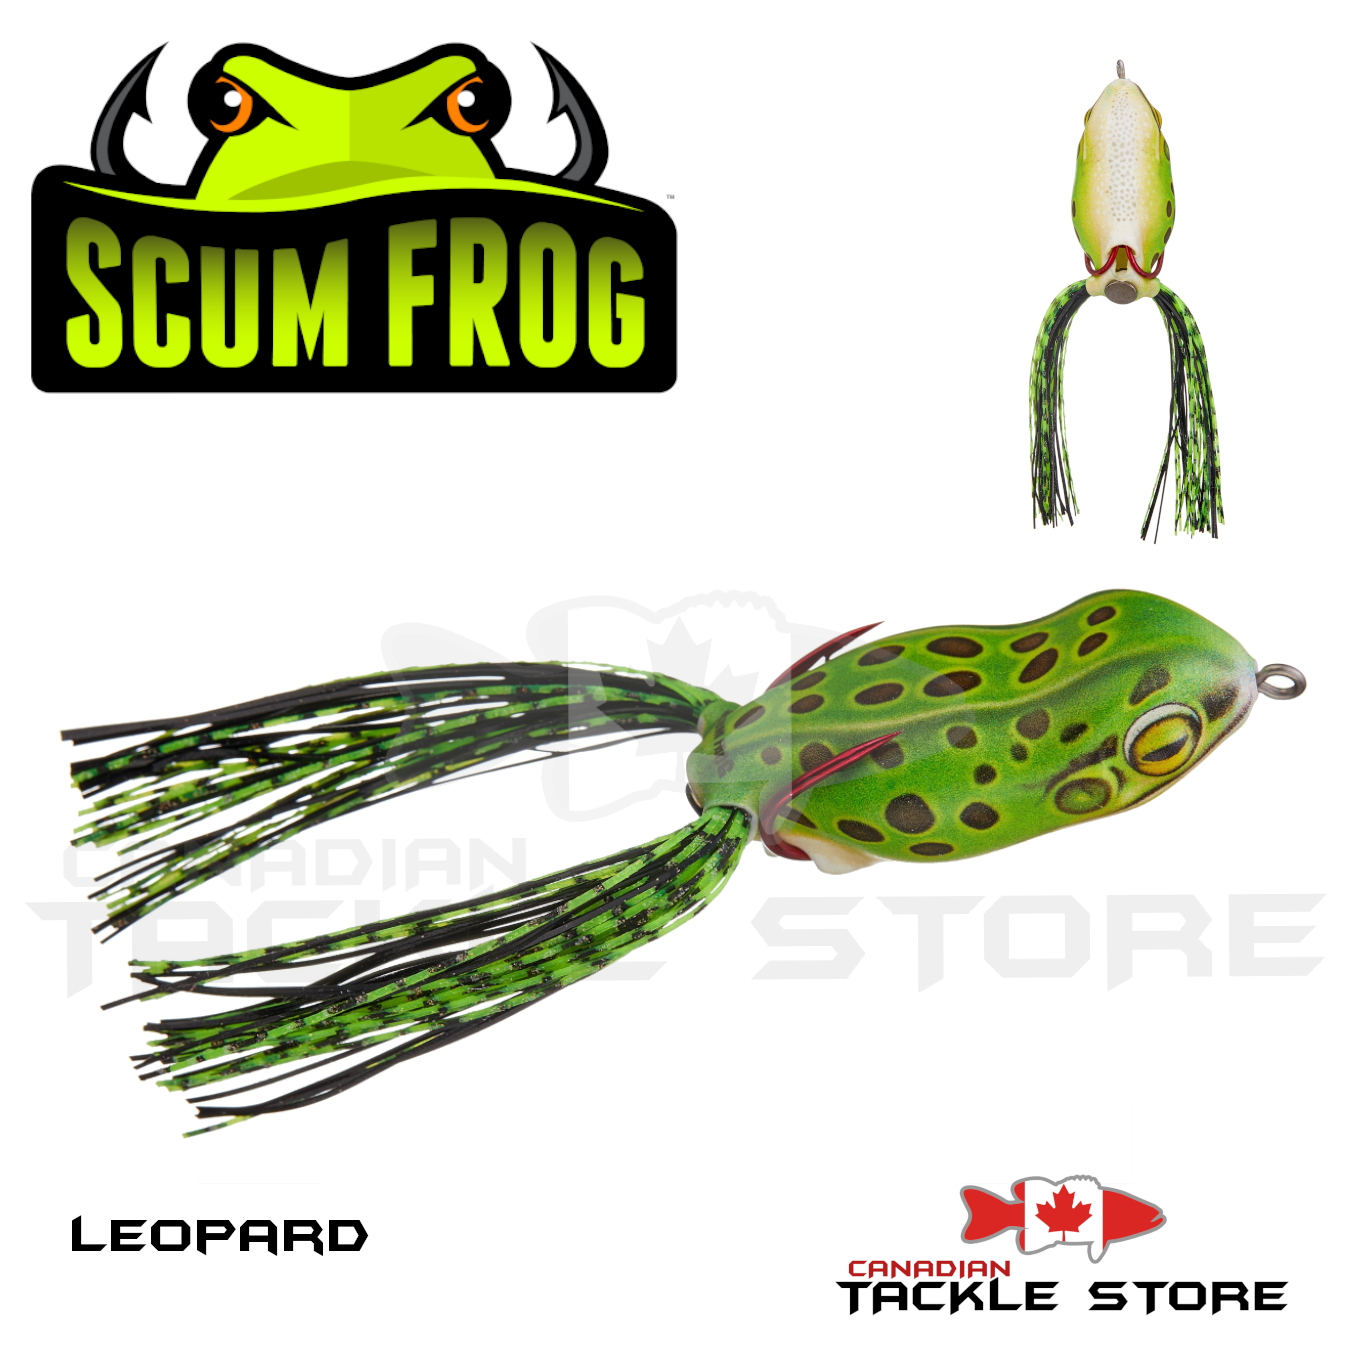 Scum Frog Launch Frog